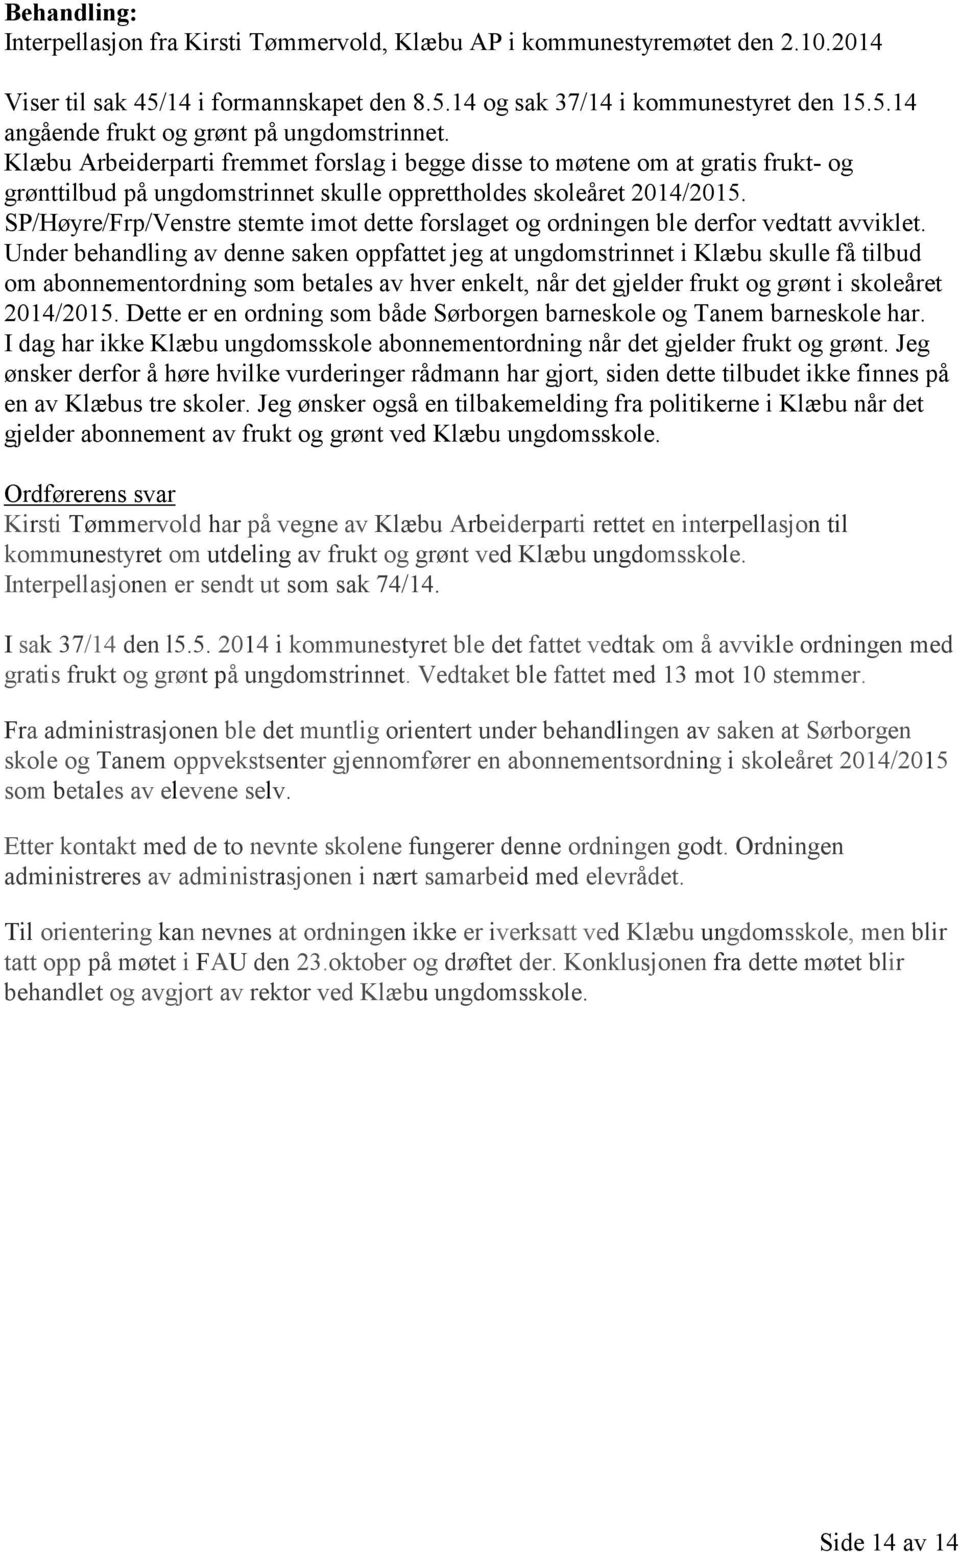 SP/Høyre/Frp/Venstre stemte imot dette forslaget og ordningen ble derfor vedtatt avviklet.